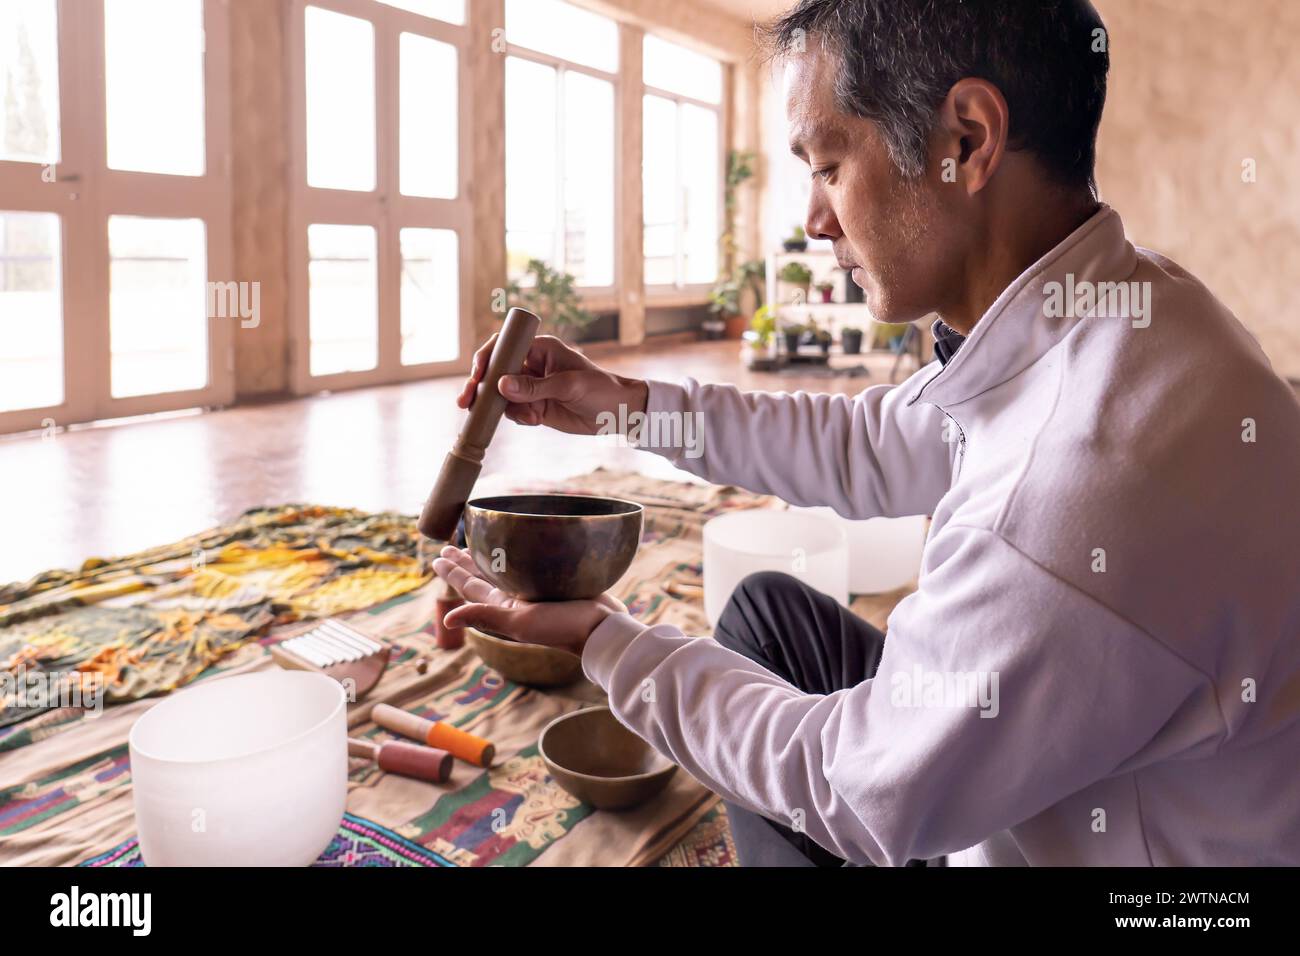 Un homme asiatique d'âge moyen est assis de profil, se concentrant sur la vibration douce d'un bol en laiton dans une pièce légèrement éclairée. Ancienne pratique de la méditation sonore dans Banque D'Images